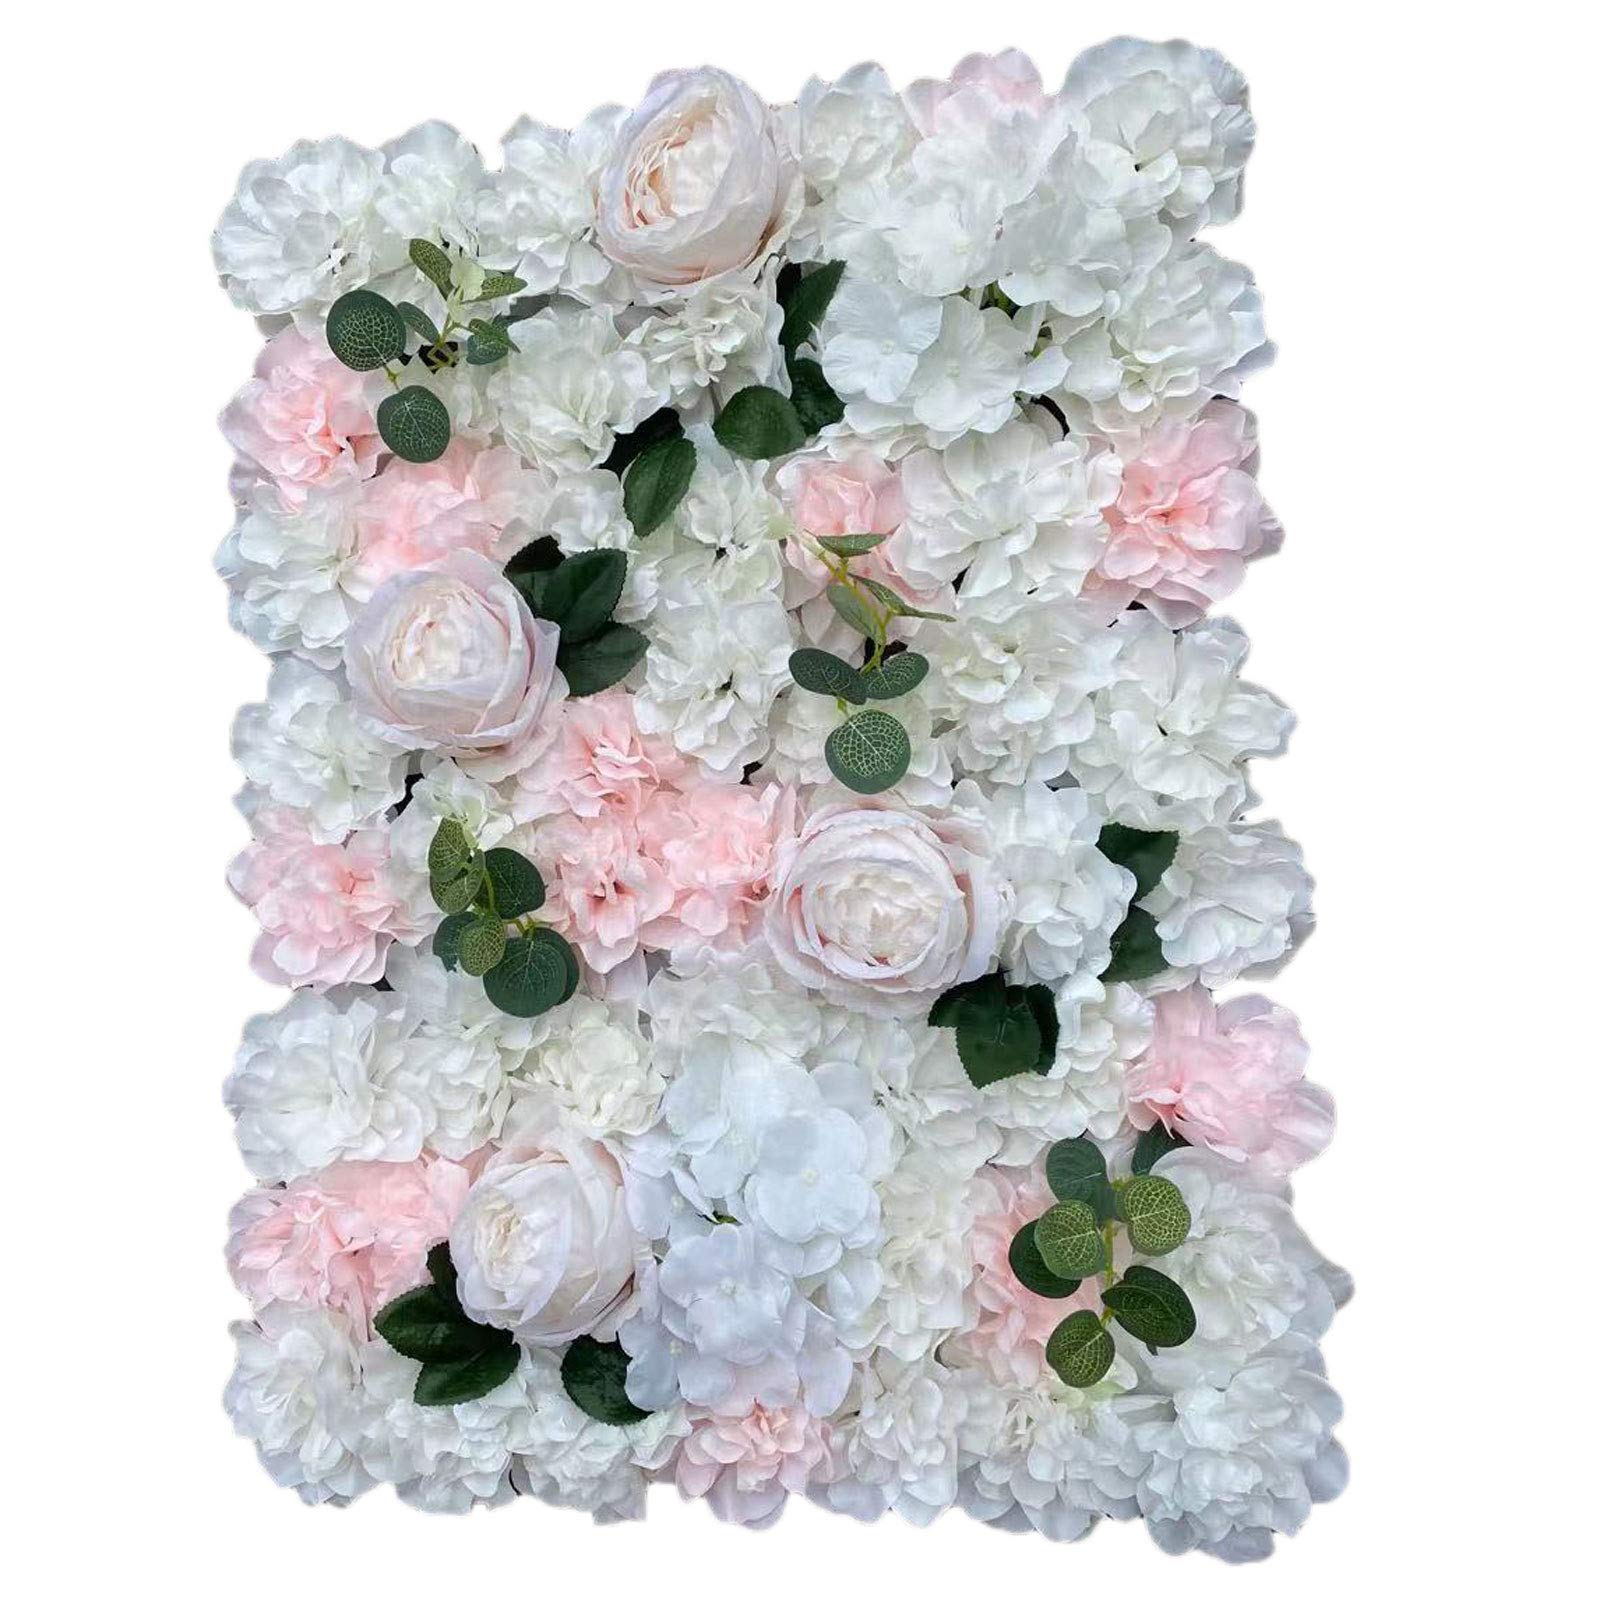 12 Stck Künstliche Blumenwand 40x60cm Seidenblume Hintergrund